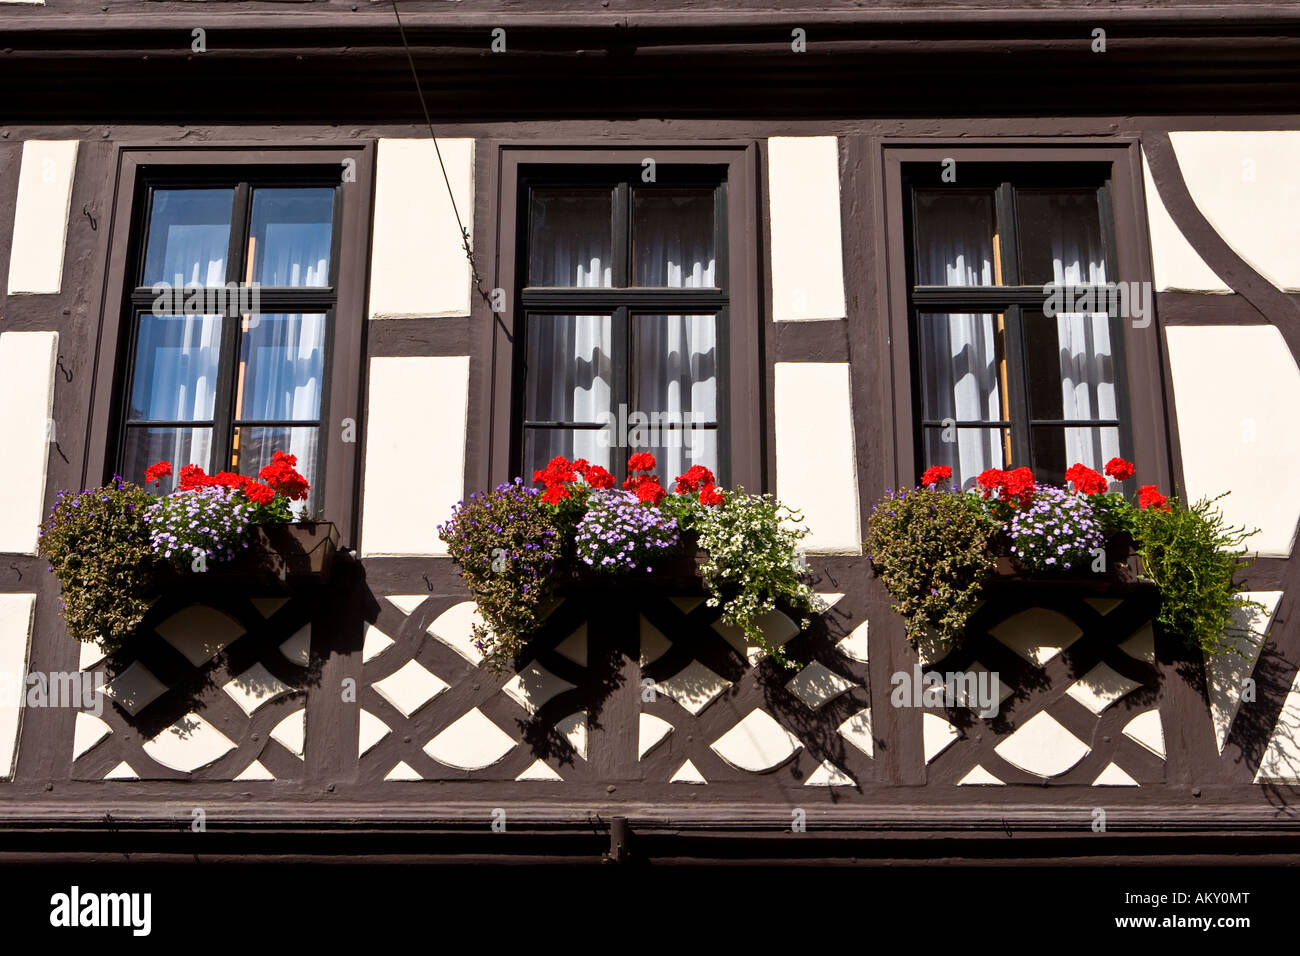 Partie ancienne de la ville, maisons à colombages bien entretenues avec les boîtes à fleurs, Miltenberg, Bavière, Allemagne Banque D'Images